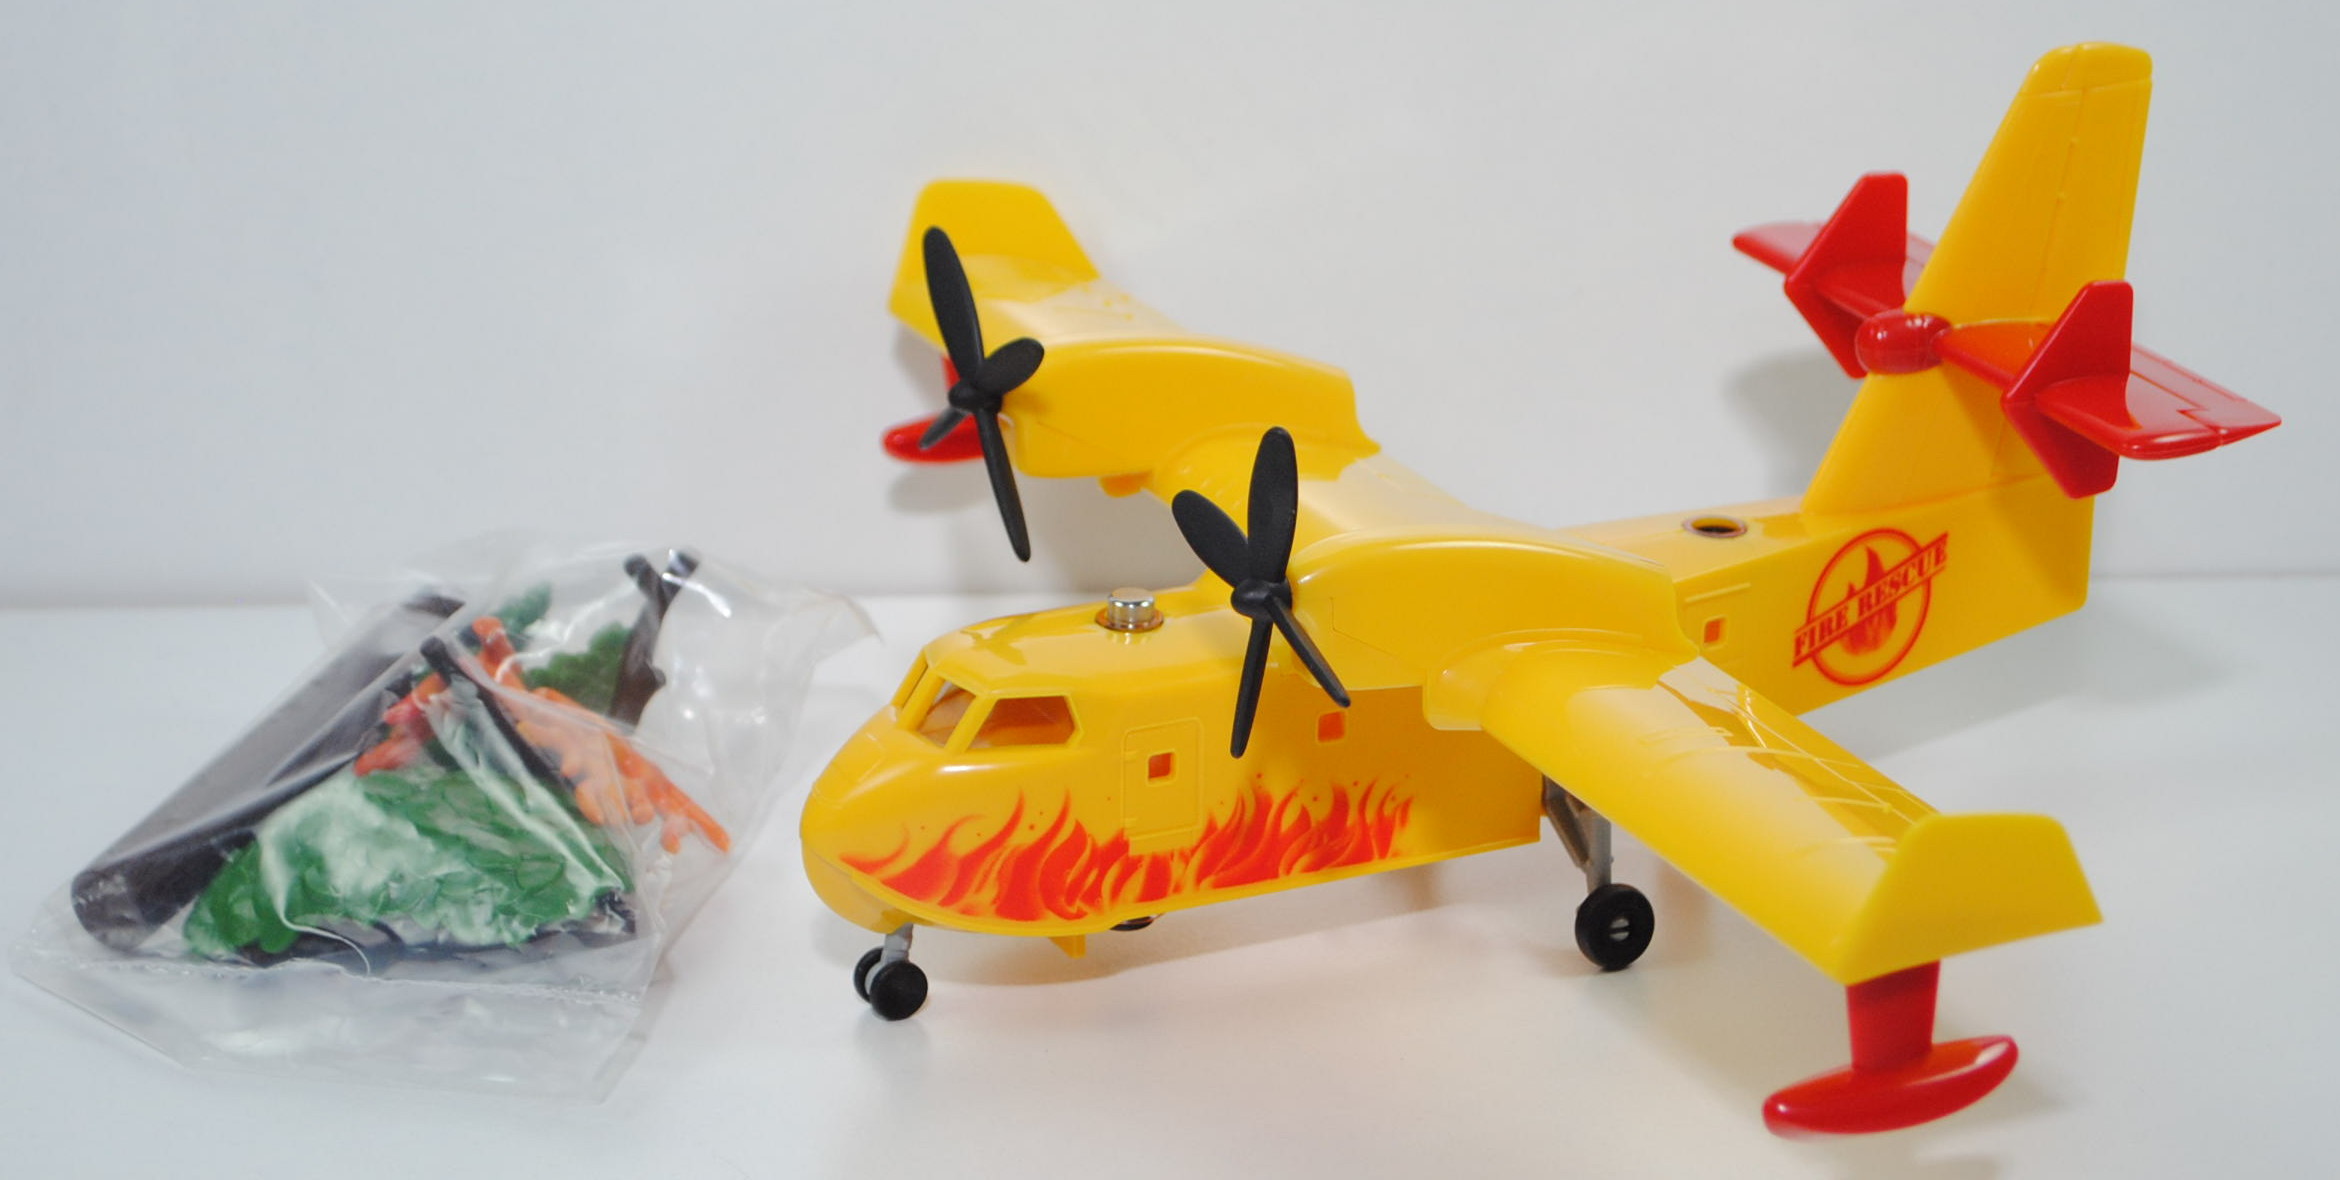 00000 Canadair CL-415 Löschflugzeug, verkehrsgelb, FIRE RESCUE, SIKU SUPER, ca. 1:87, L18